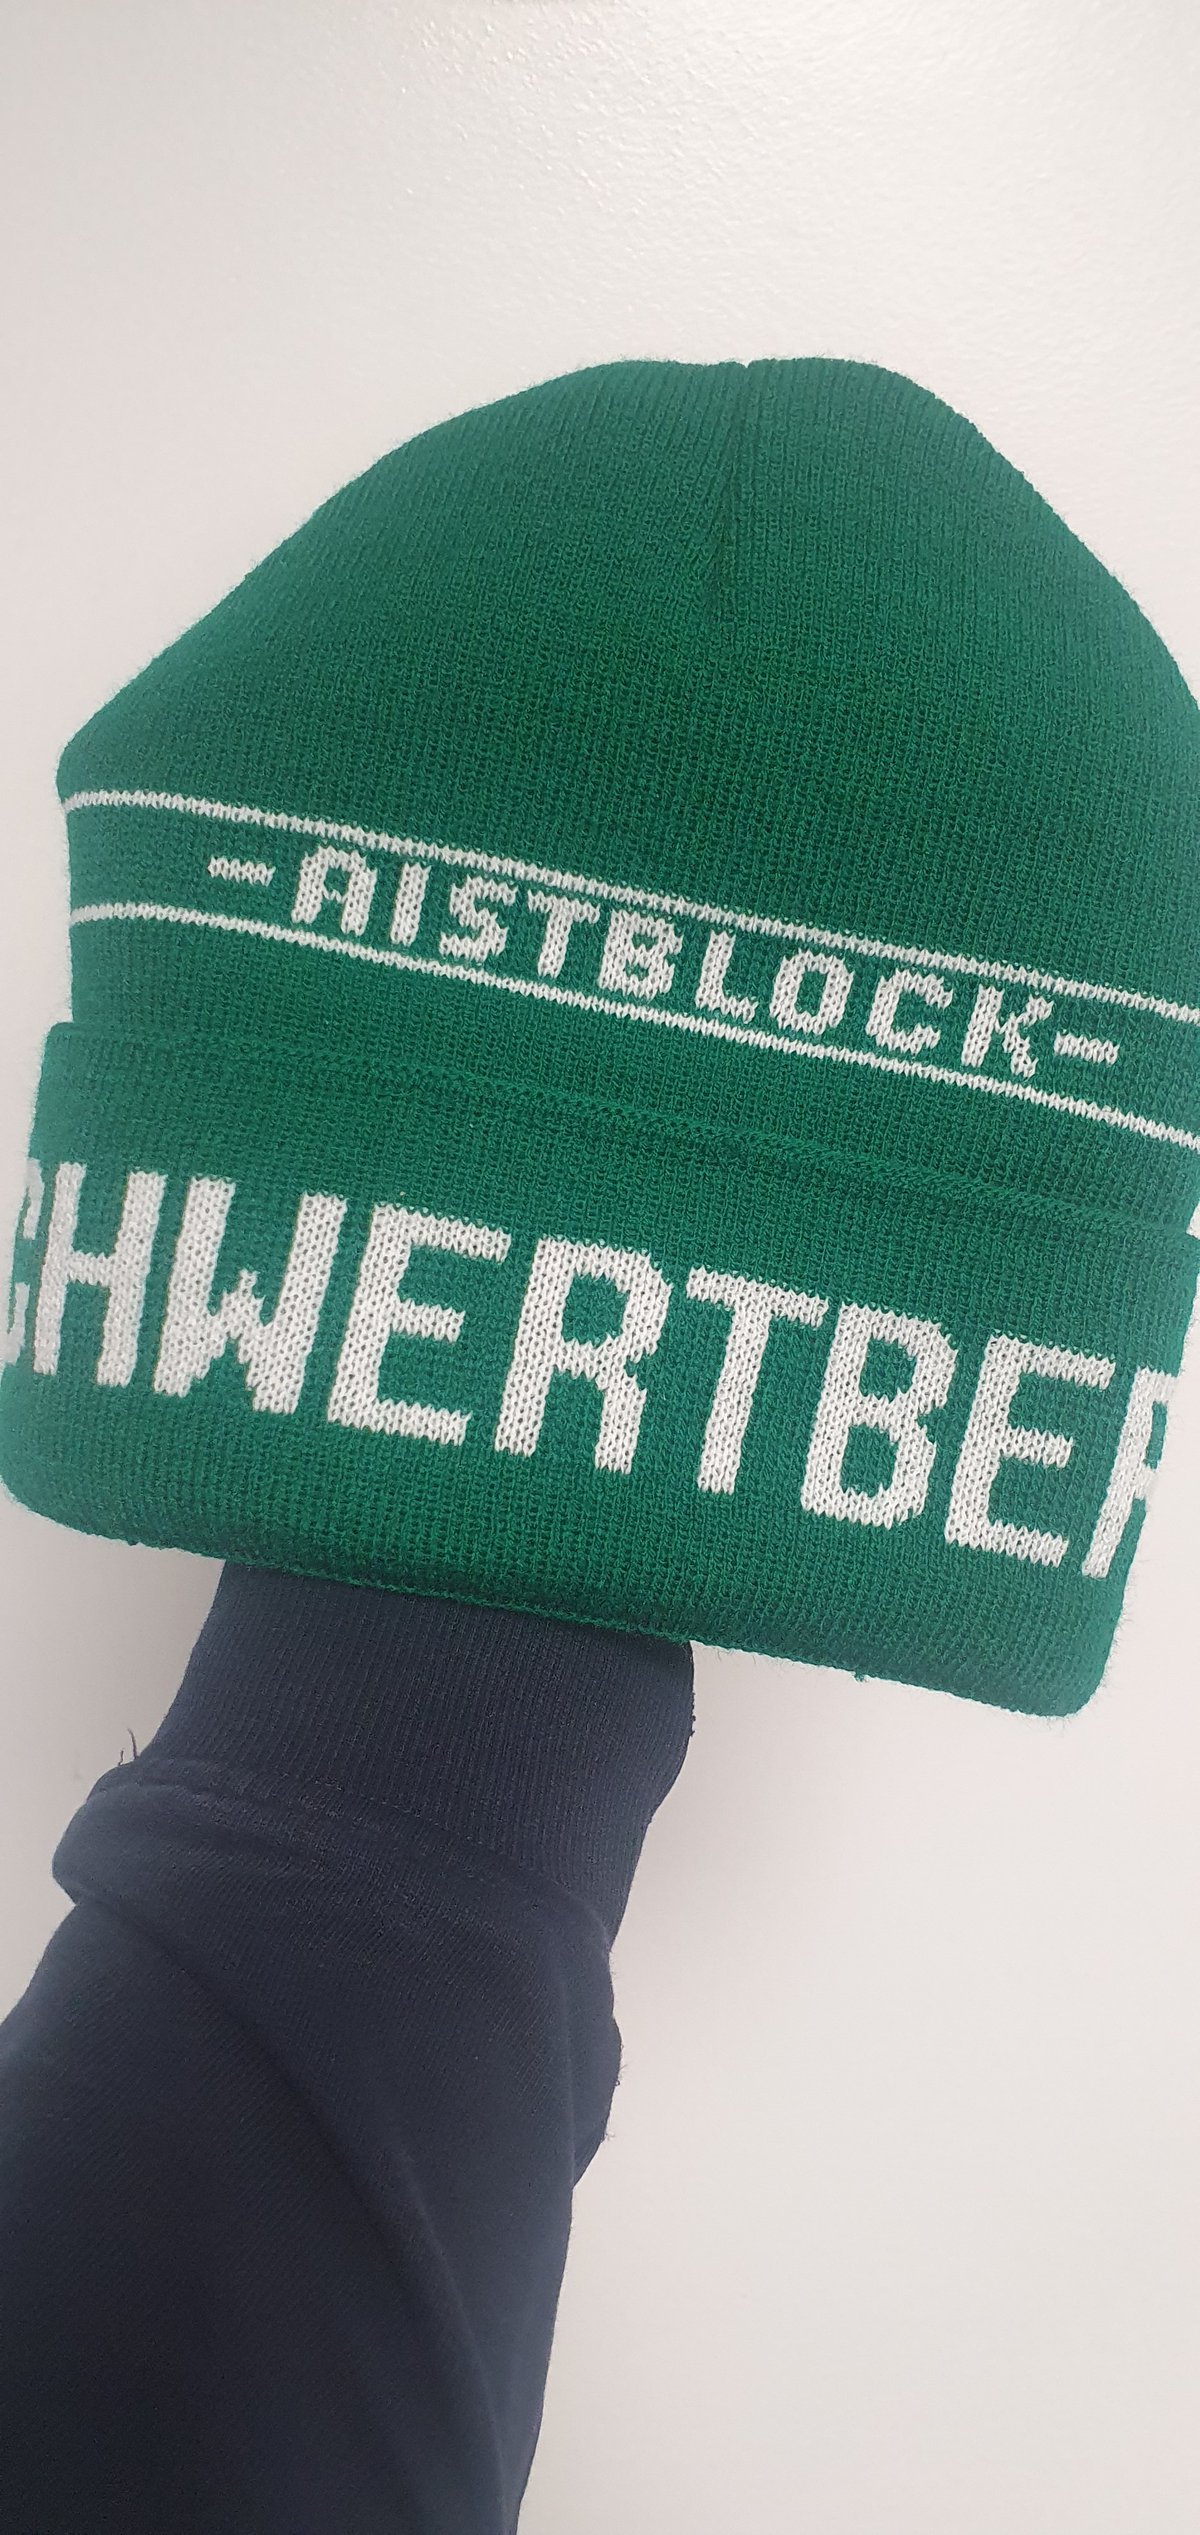 ASKÖ Schwertberg Steinbach, Aistblock Winter Hat. Football/Ultras Brand New.